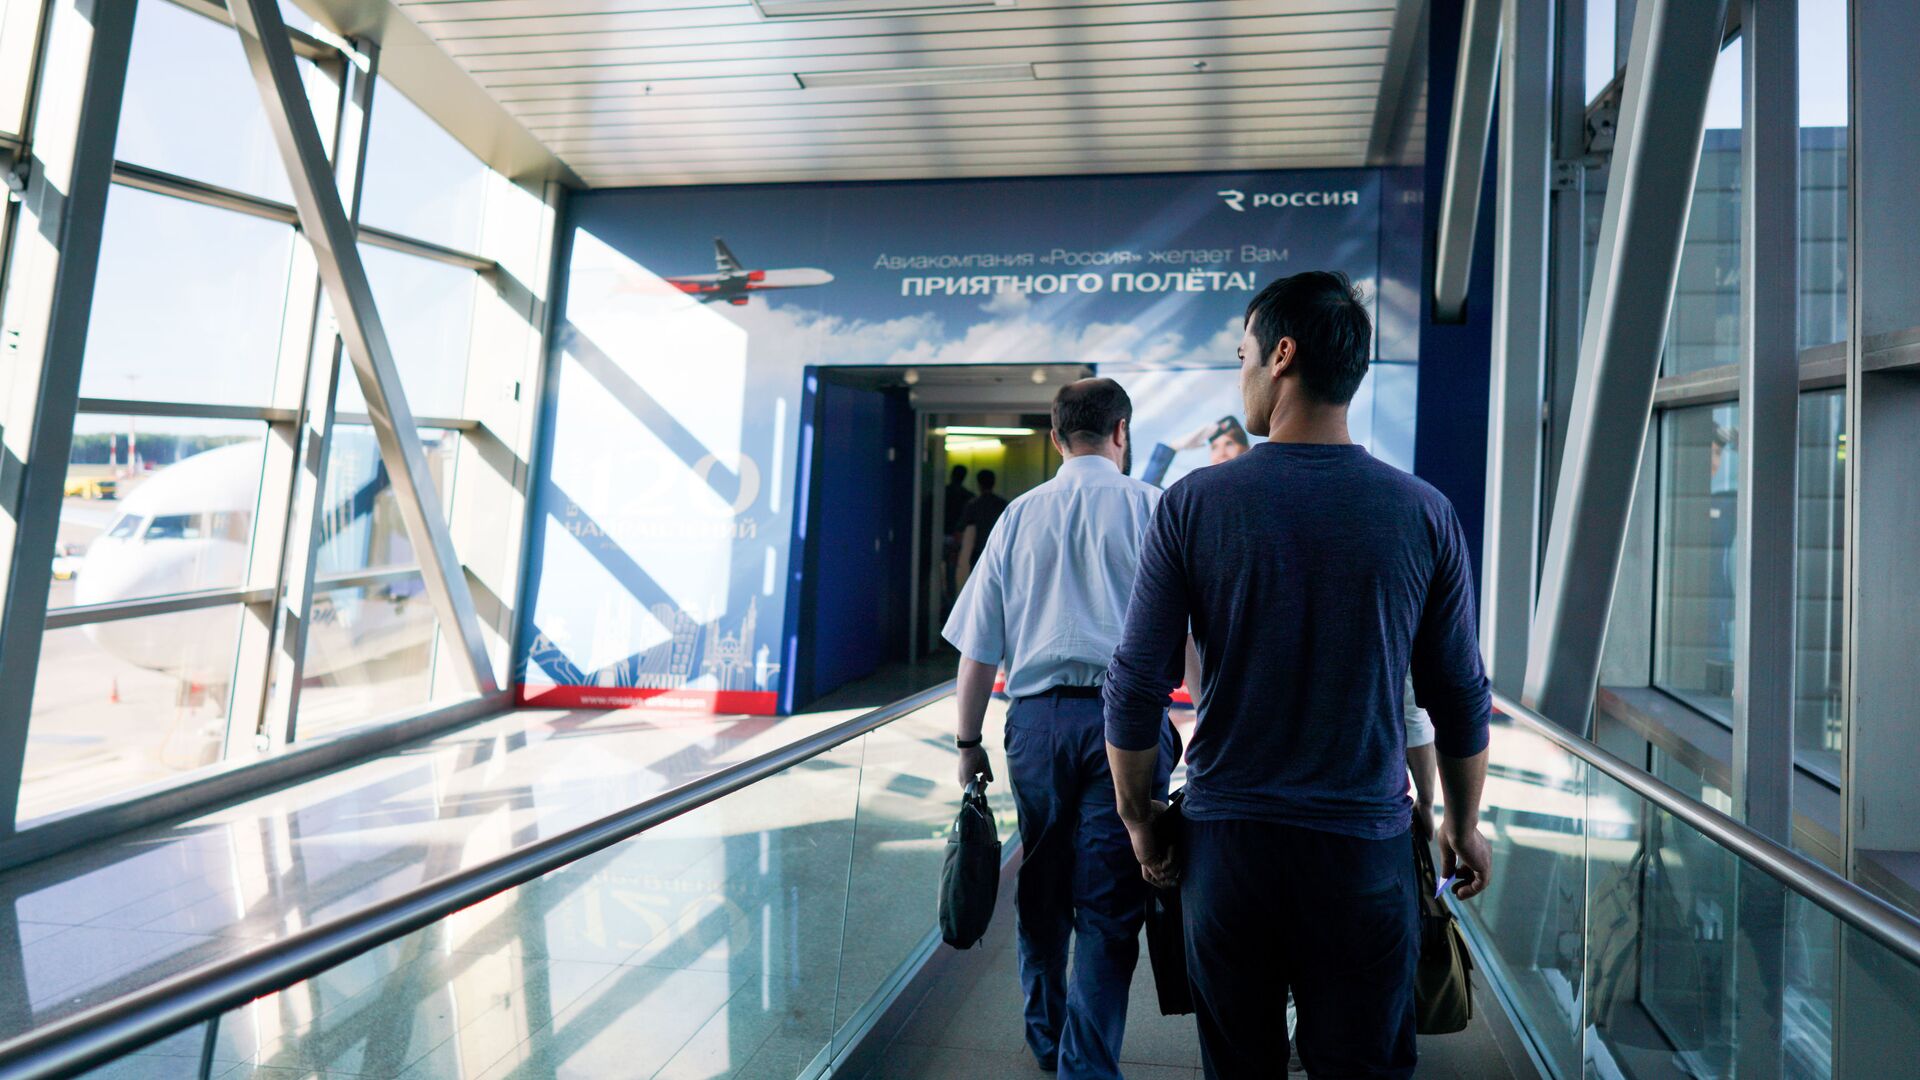 Граждане Узбекистана идут на посадку в терминале аэропорта Внуково  - Sputnik Таджикистан, 1920, 28.06.2021